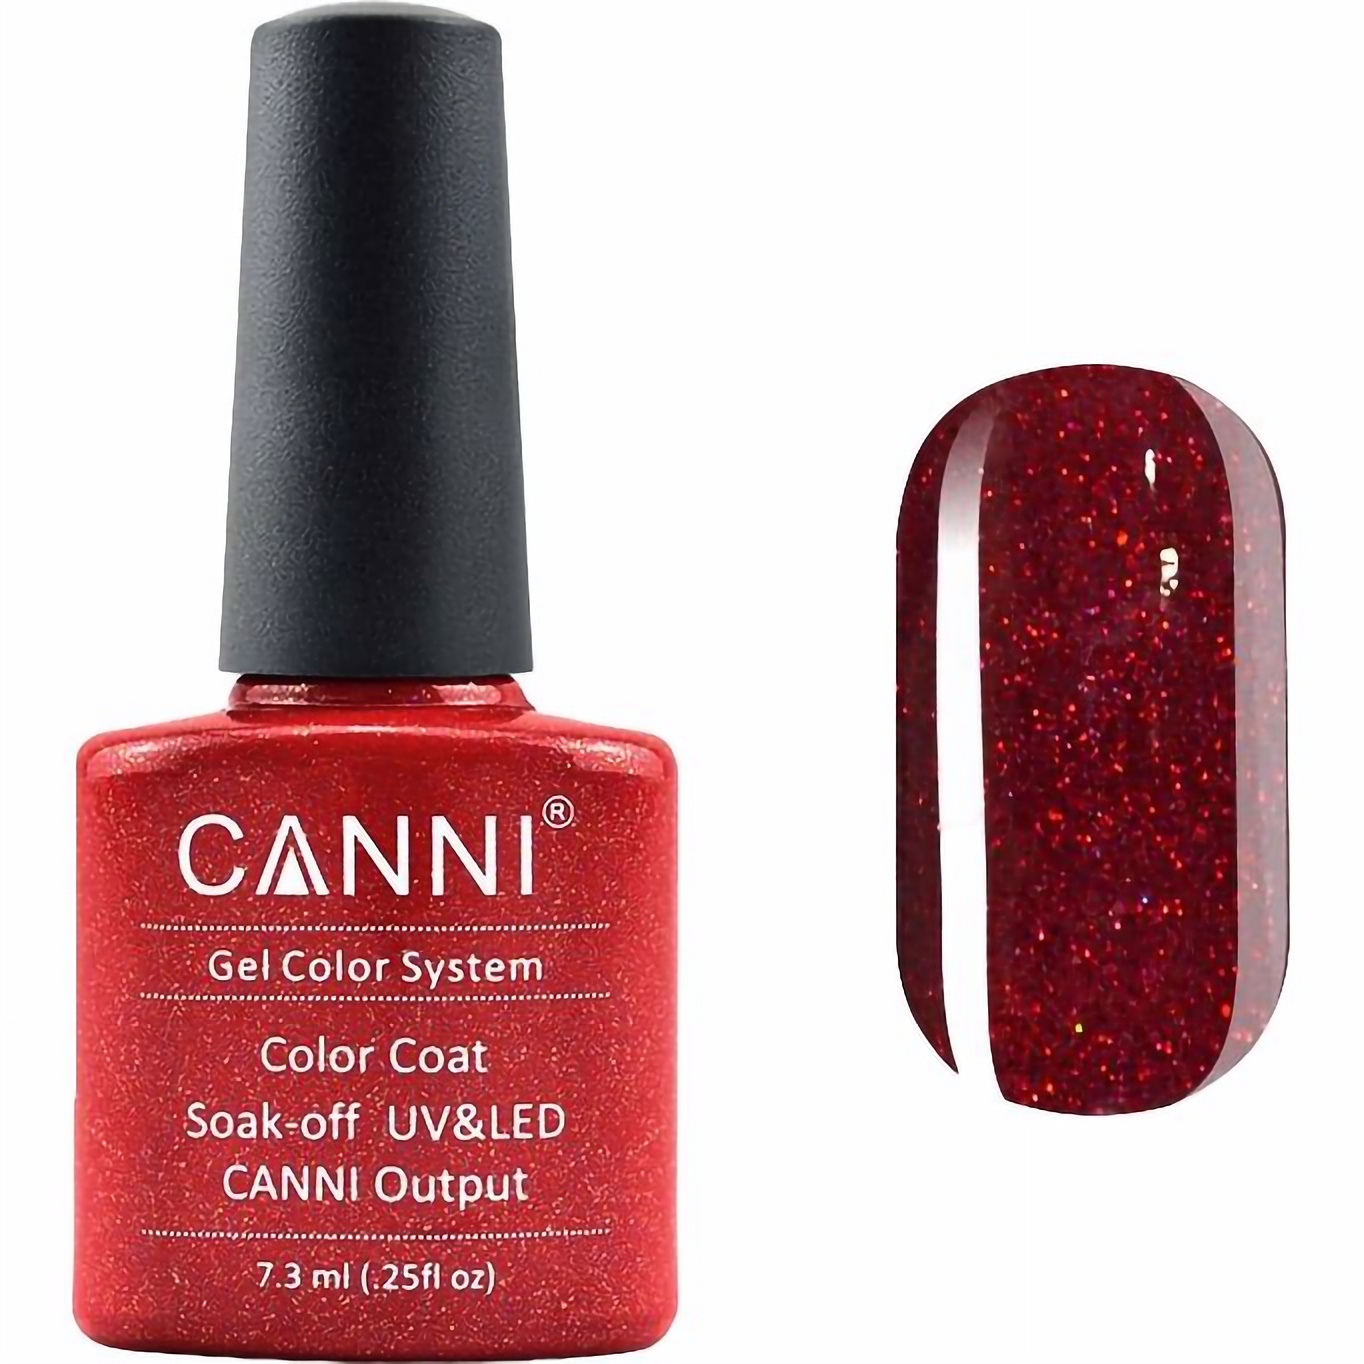 Гель-лак Canni Color Coat Soak-off UV&LED 207 бургунди с мелкими красными блестками и микроблестками 7.3 мл - фото 1